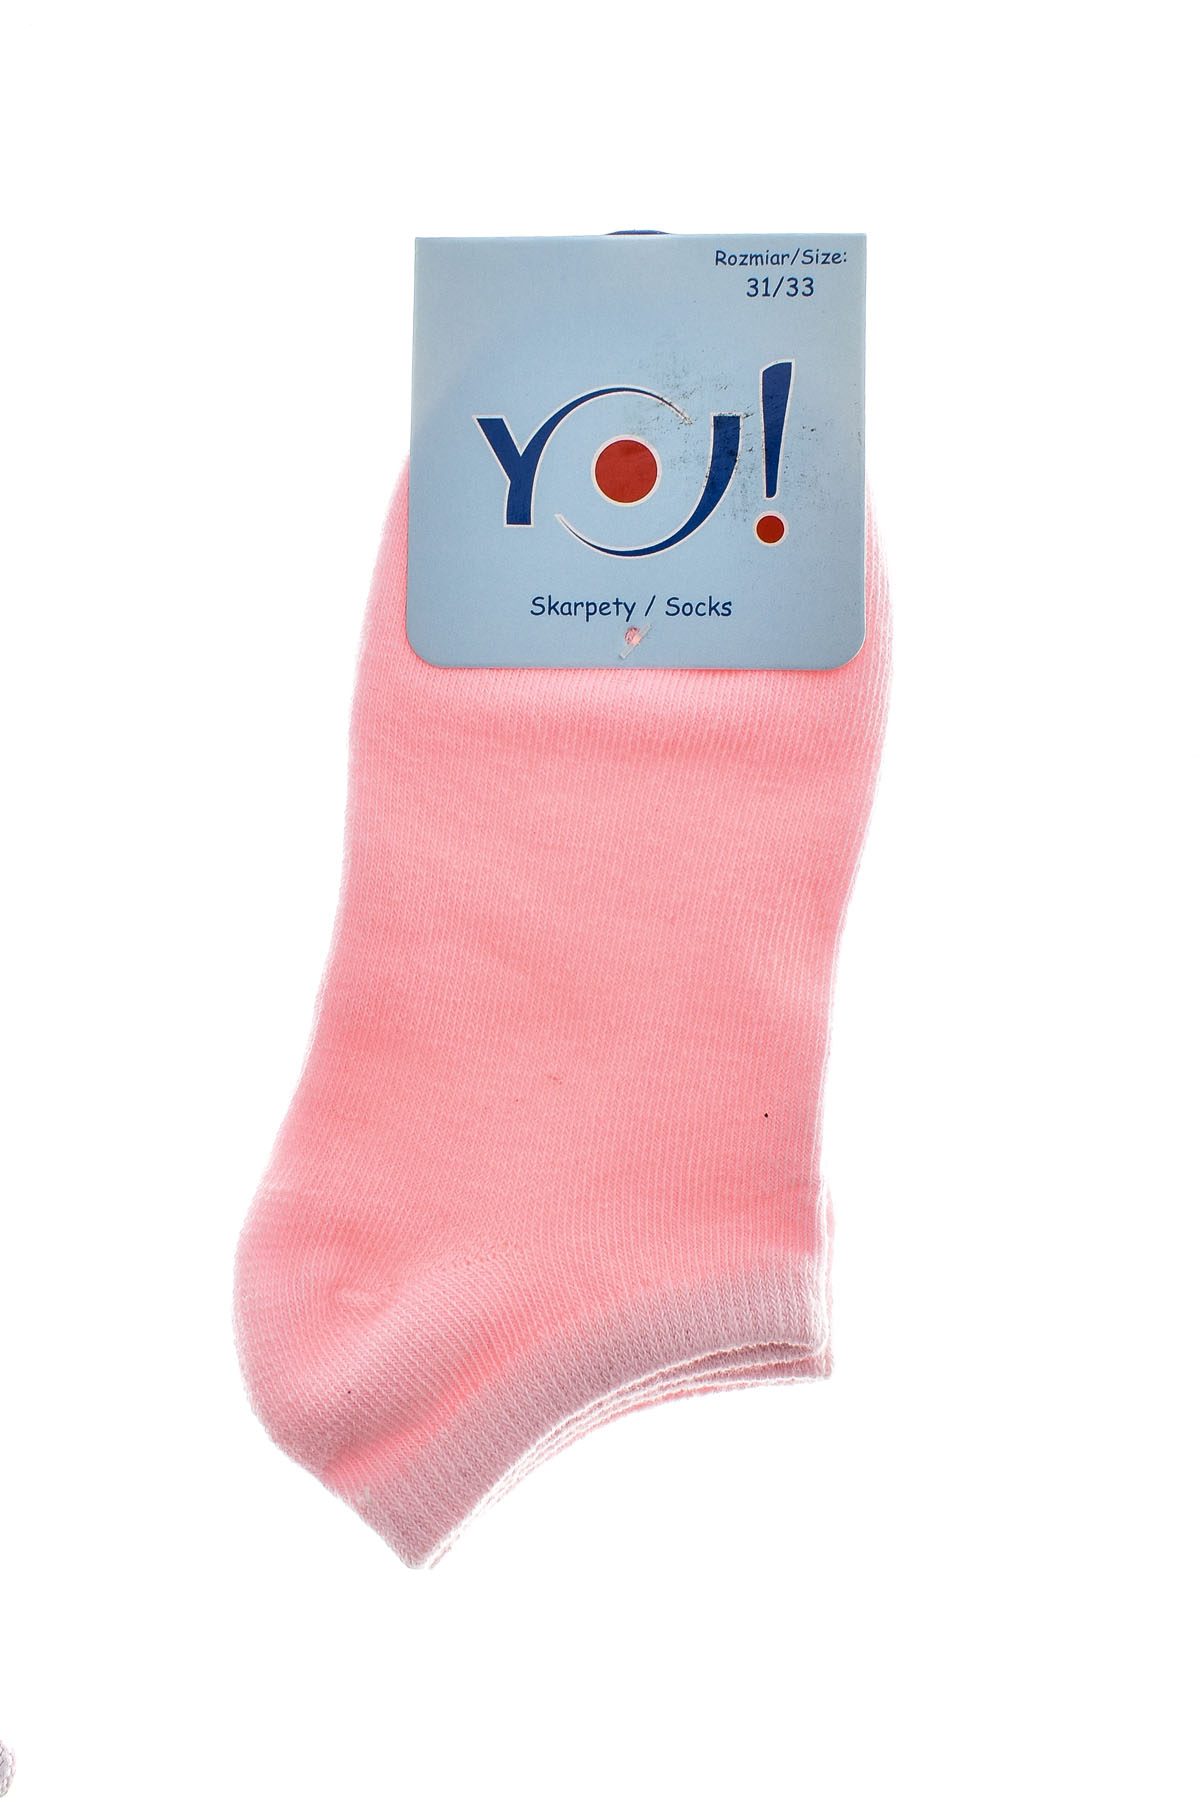 Παιδικές κάλτσες - YO! club - 1